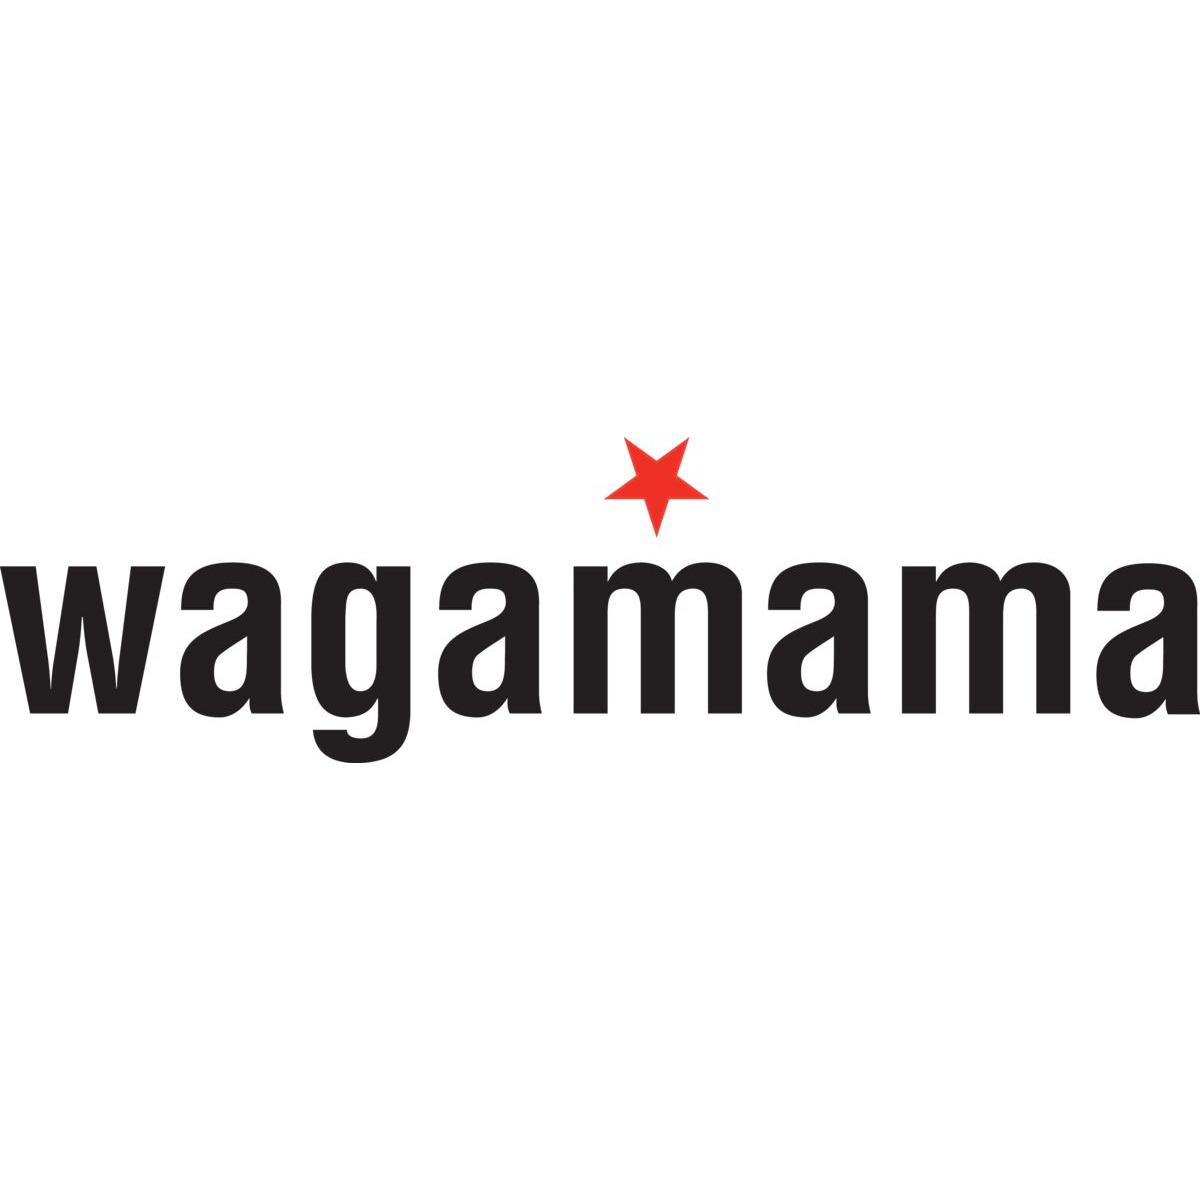 wagamama - New York, NY 10158 - (646)813-3396 | ShowMeLocal.com